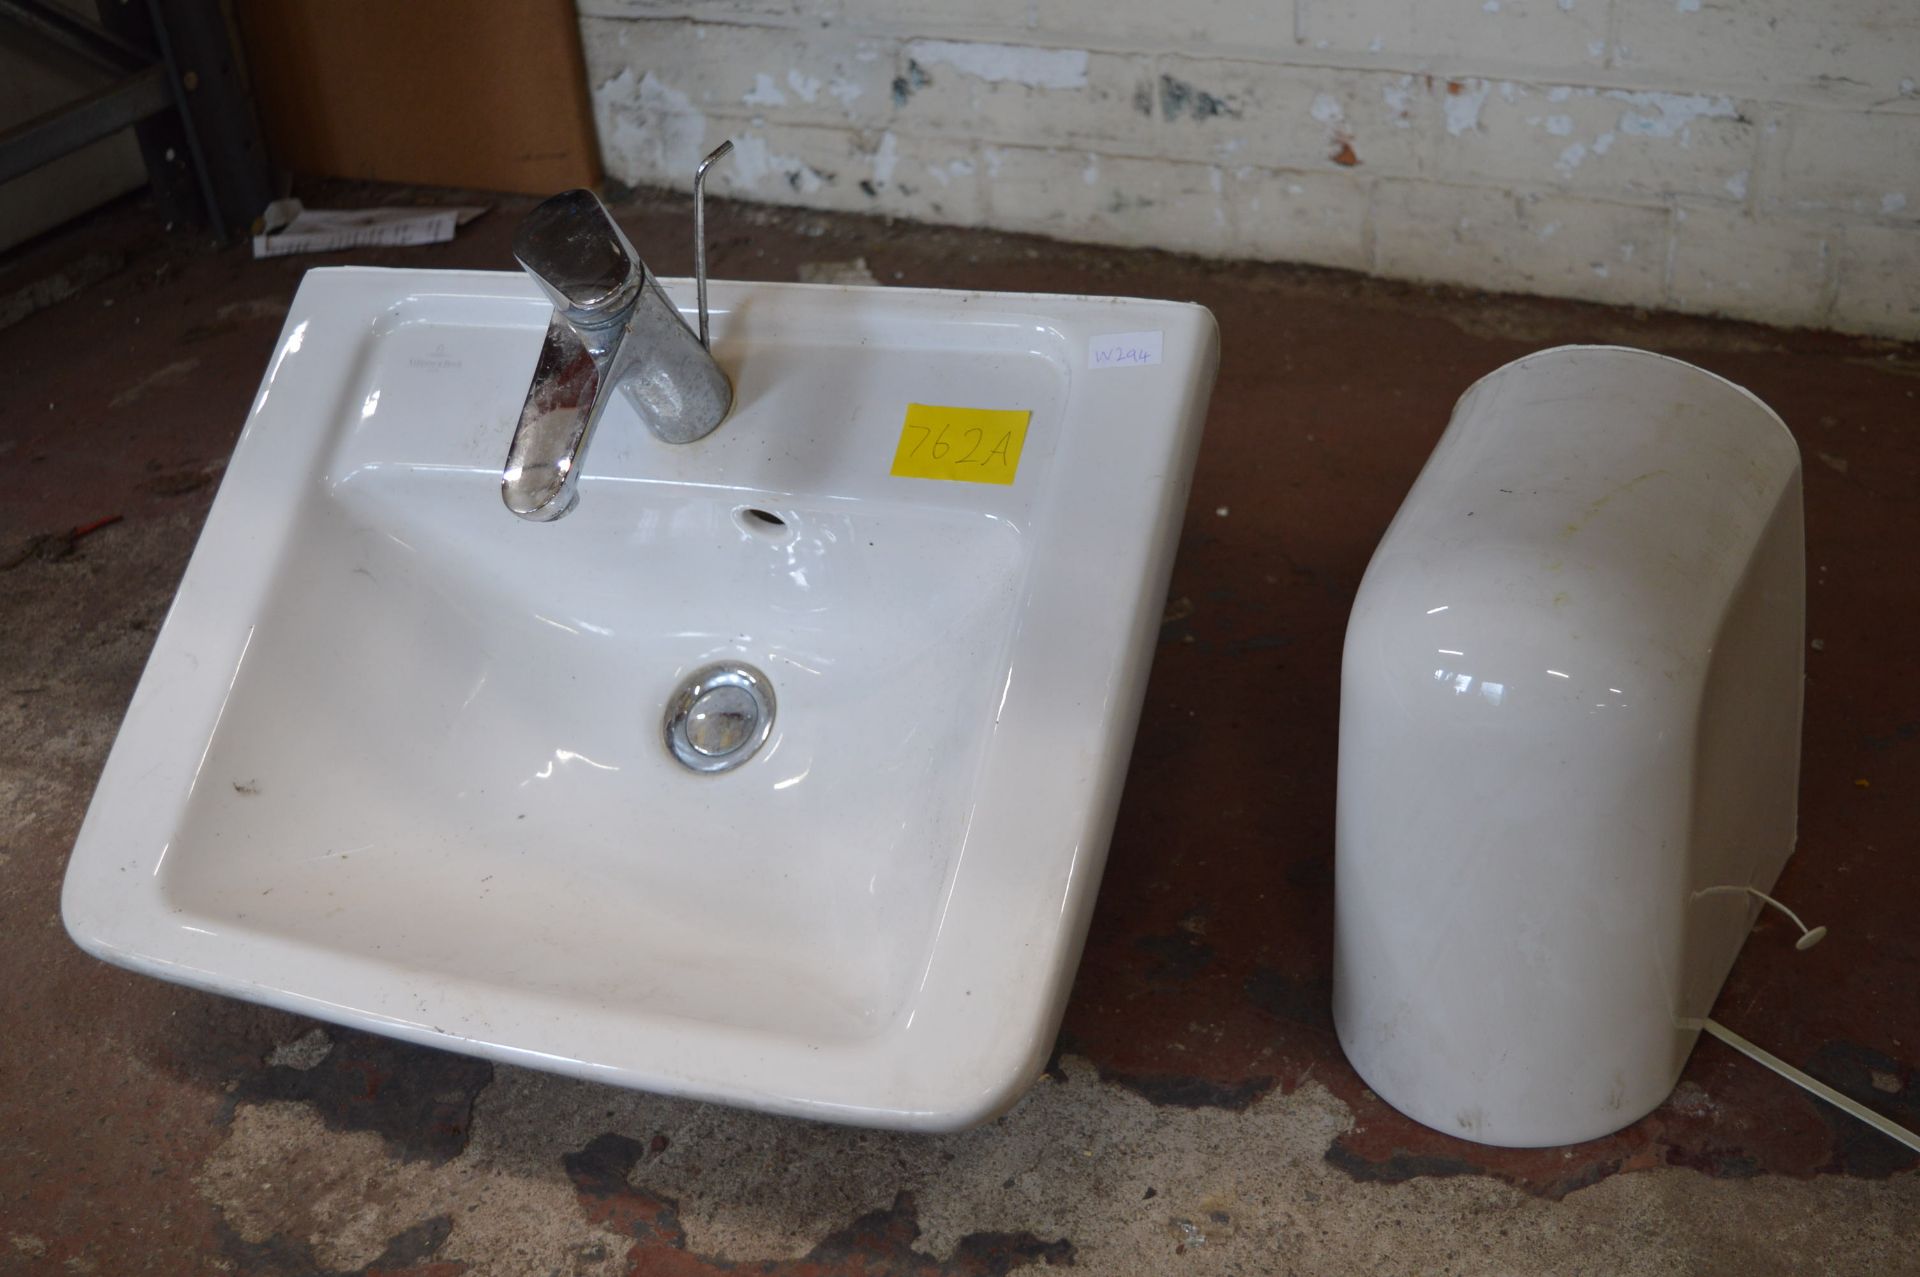 White Ceramic Basin/Sink